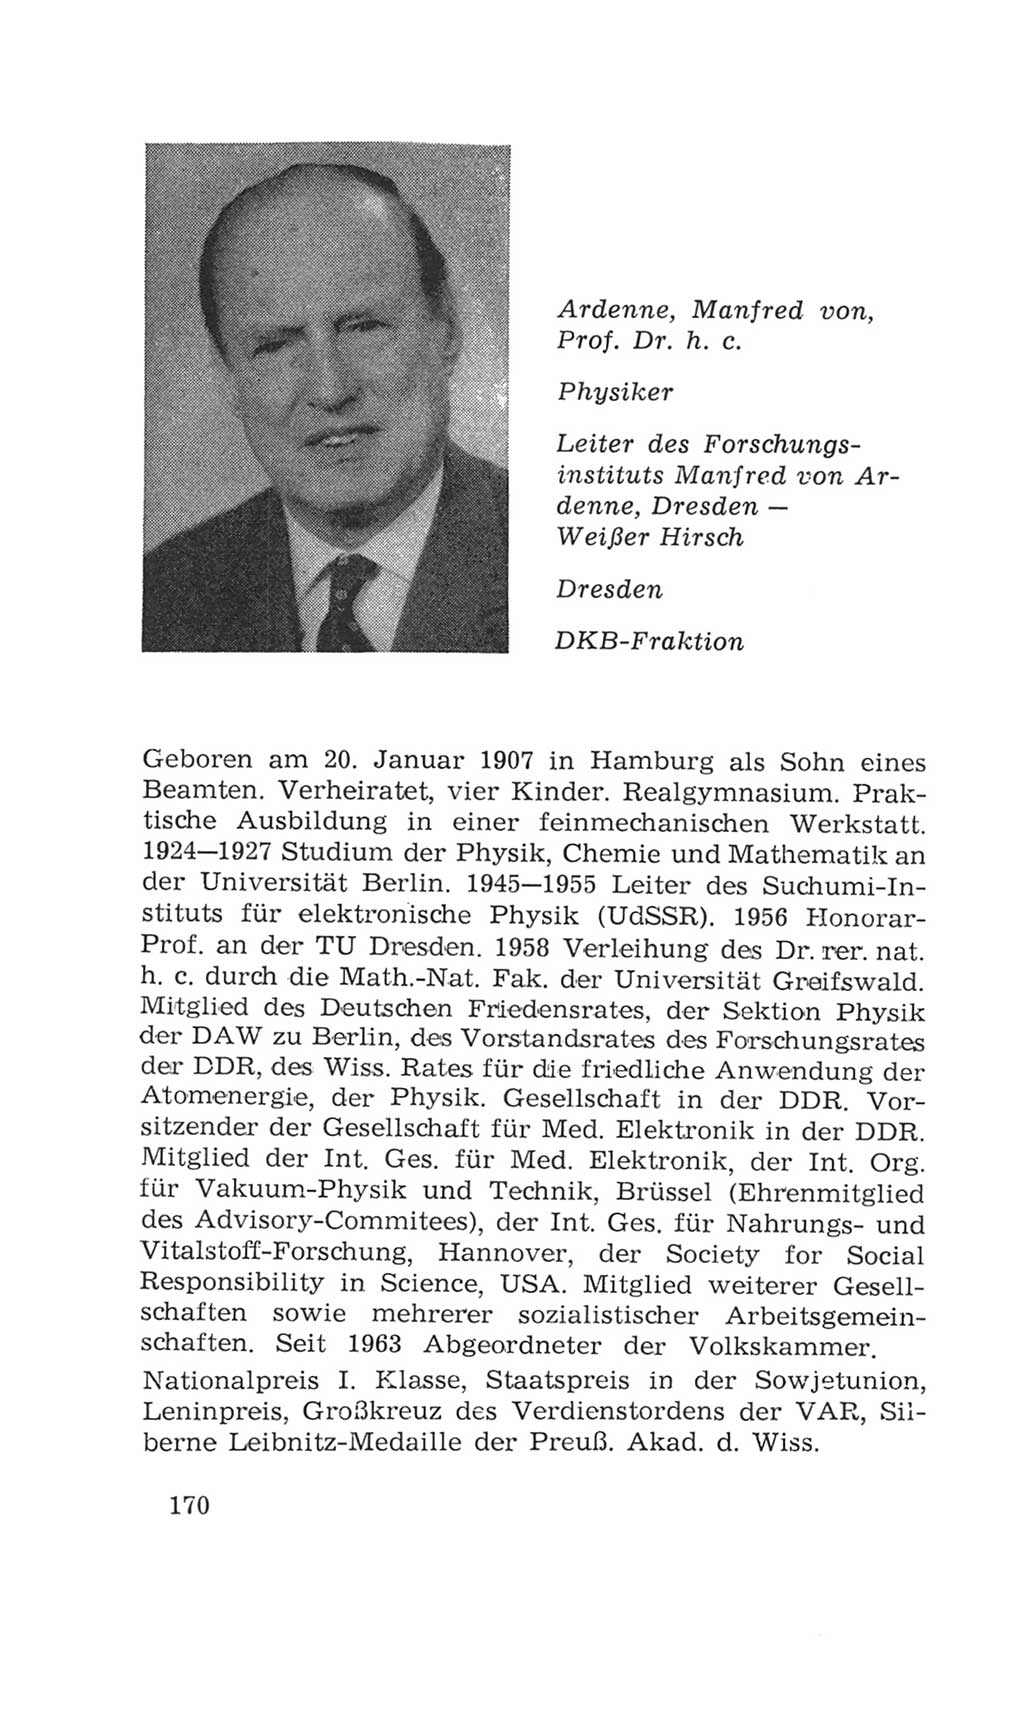 Volkskammer (VK) der Deutschen Demokratischen Republik (DDR), 4. Wahlperiode 1963-1967, Seite 170 (VK. DDR 4. WP. 1963-1967, S. 170)